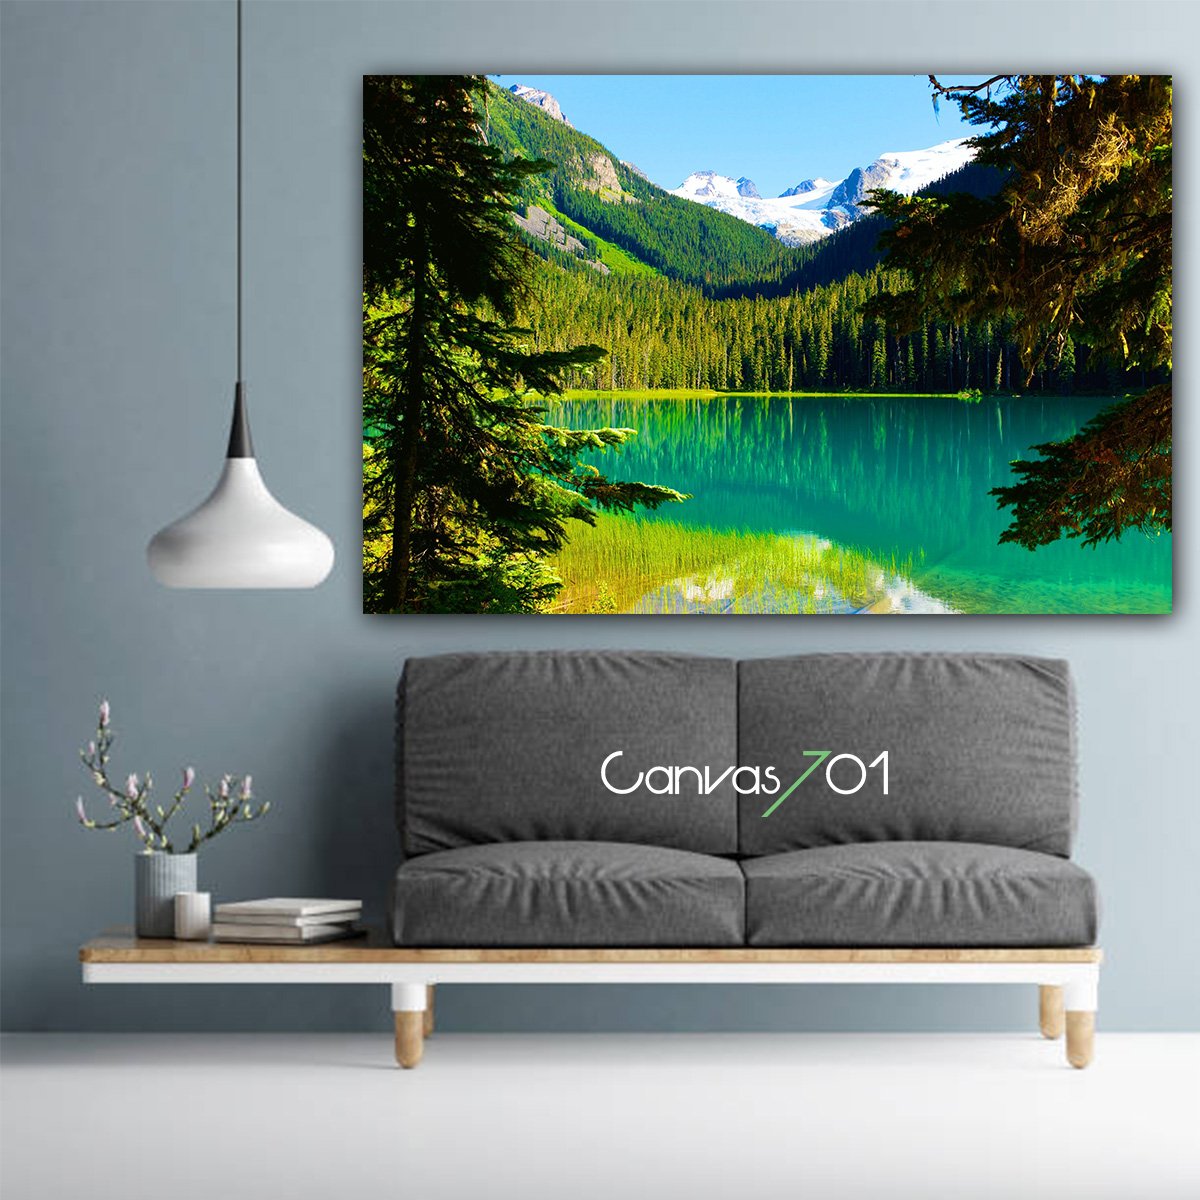 Canvas701 | Göl ve Yeşil Kanvas Tablo